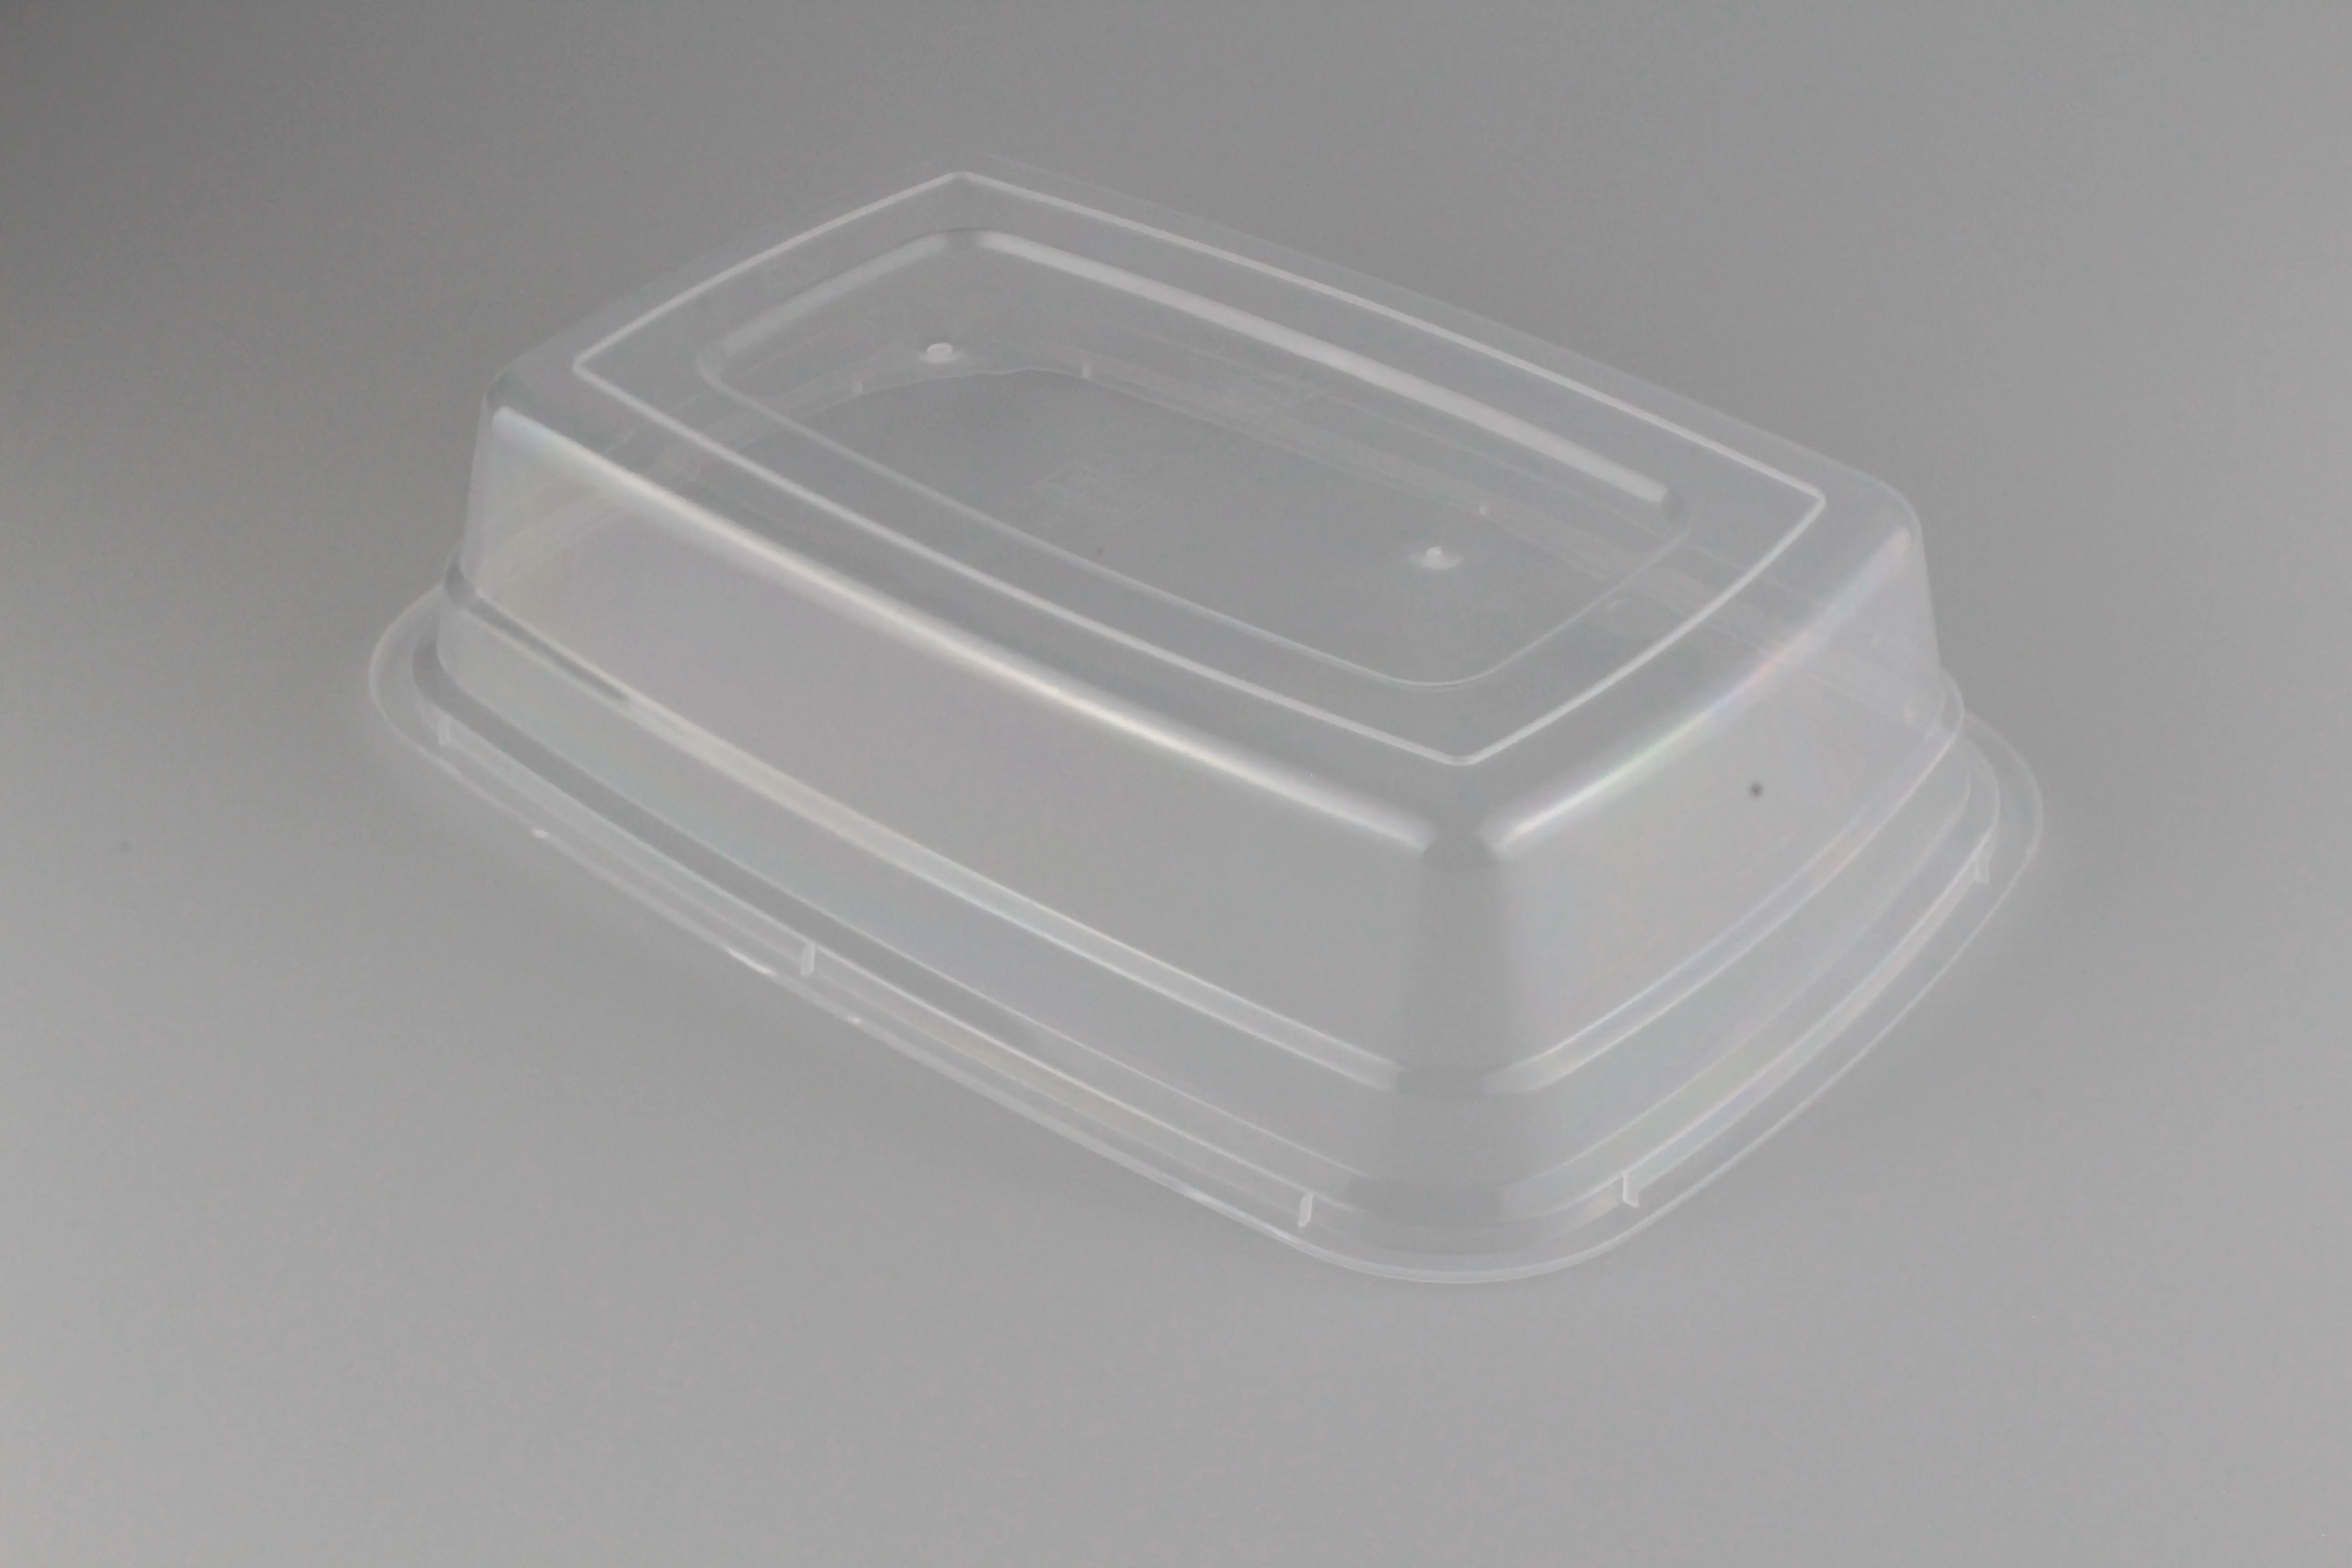 Ultimo disegno prezzo ragionevole imballaggio alimentare in plastica scatola piegata da 950ml usa e getta in plastica rettangolare scatola per alimenti